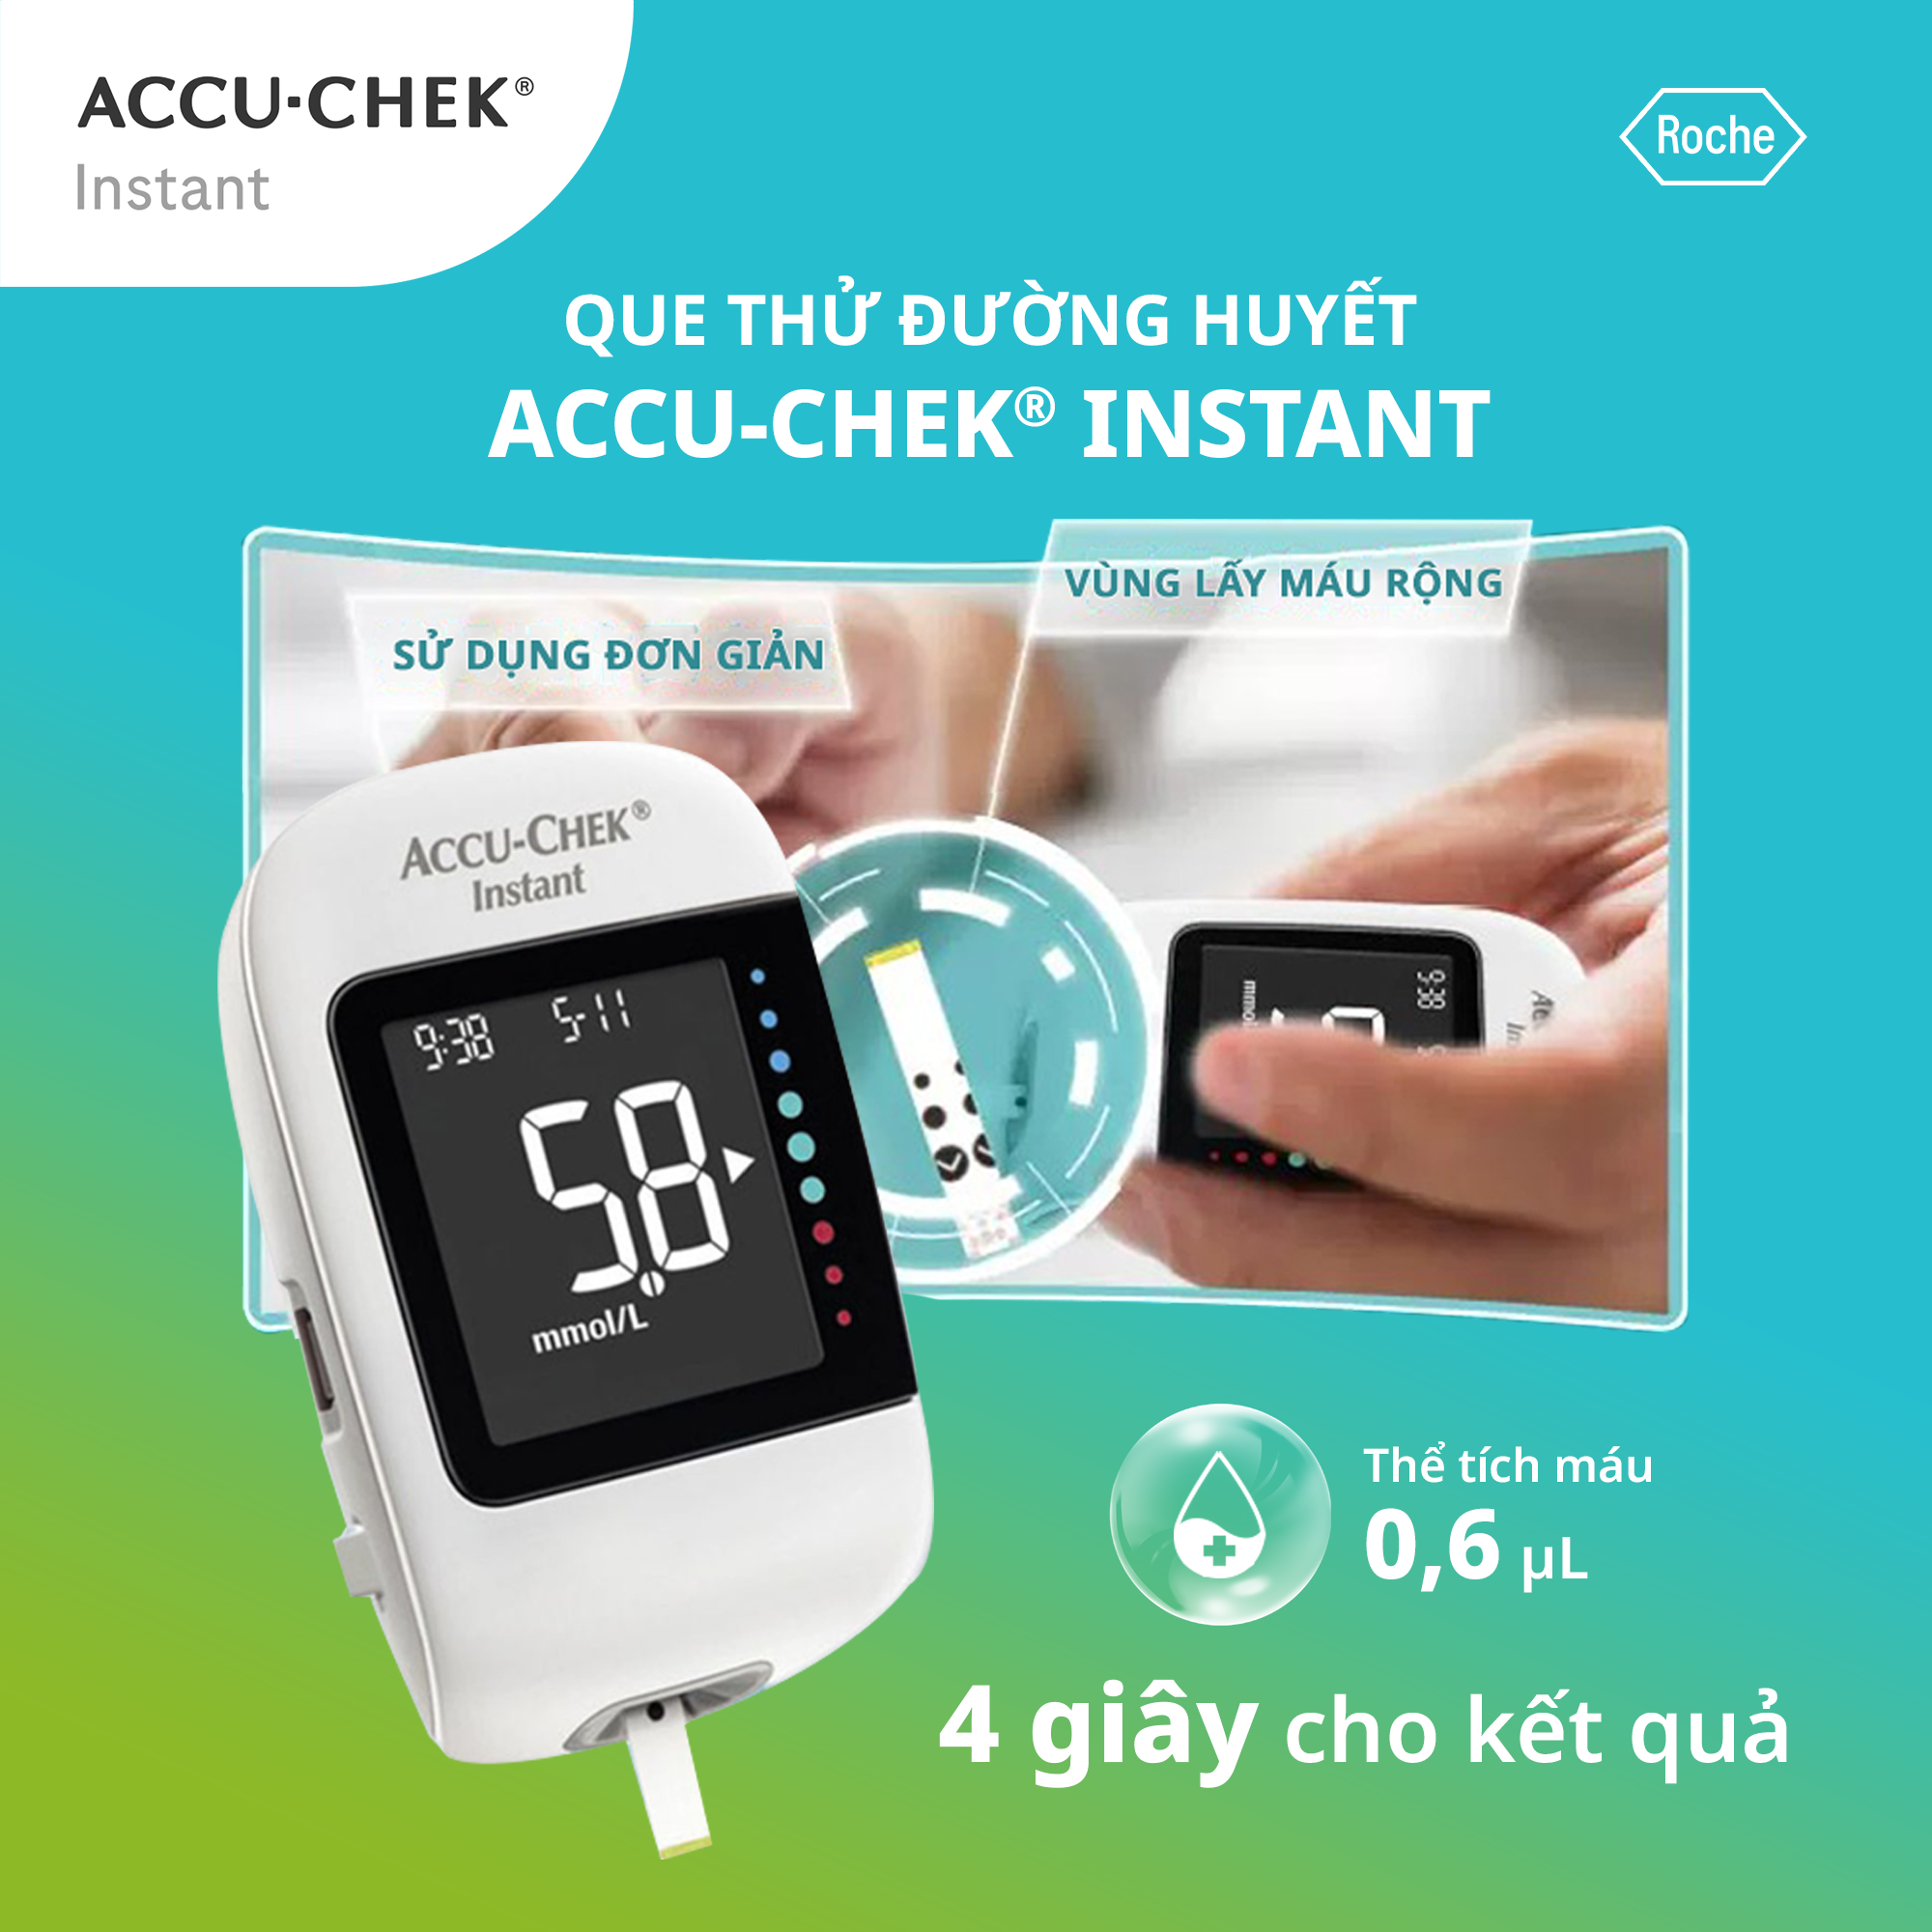 Máy đo đường huyết Accu-Chek Instant chính xác vượt trội & dễ dàng sử dụng